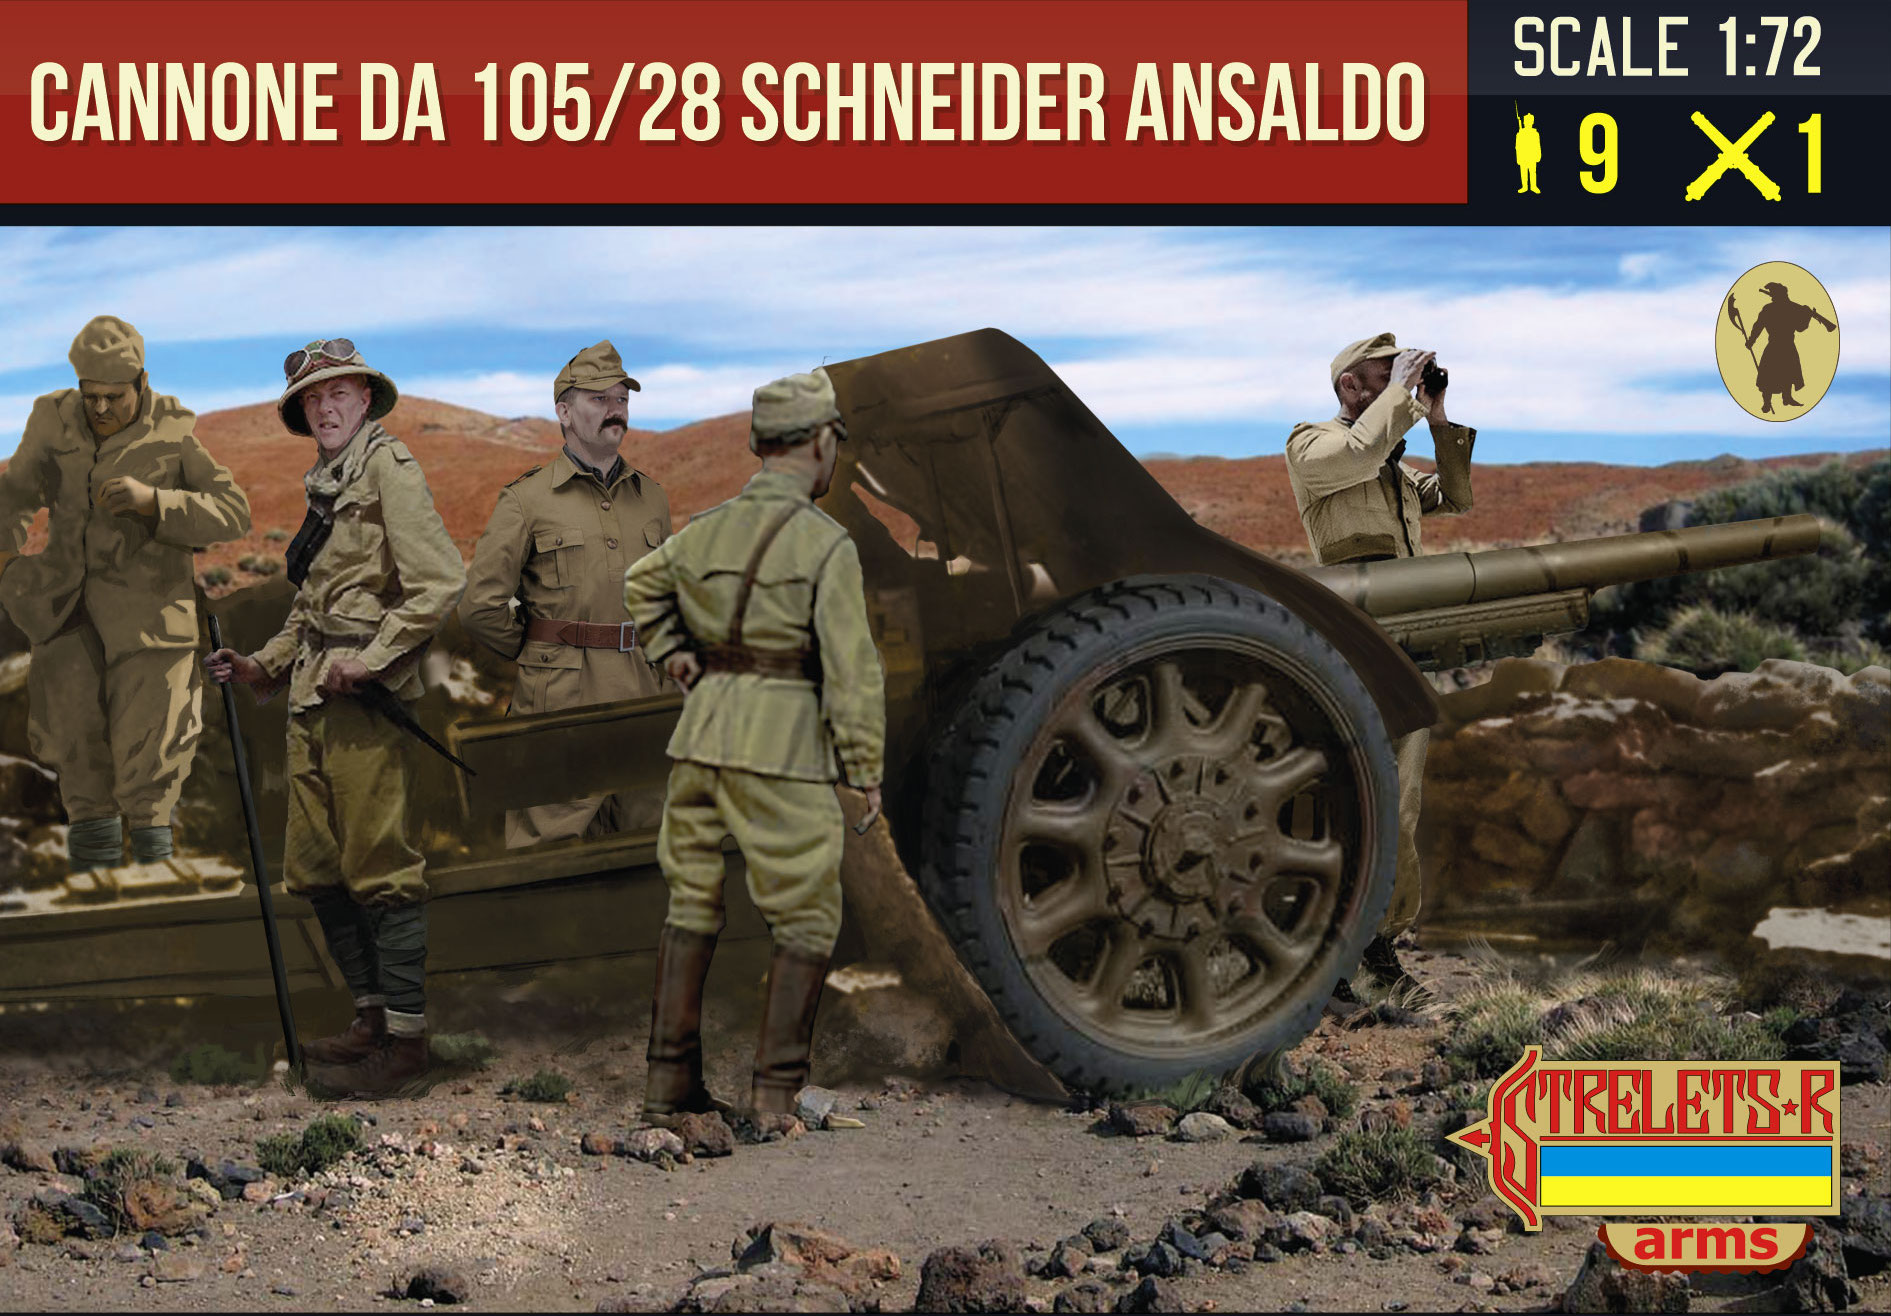 WW2 Cannone da 105/28 Schneider Ansaldo with Crew